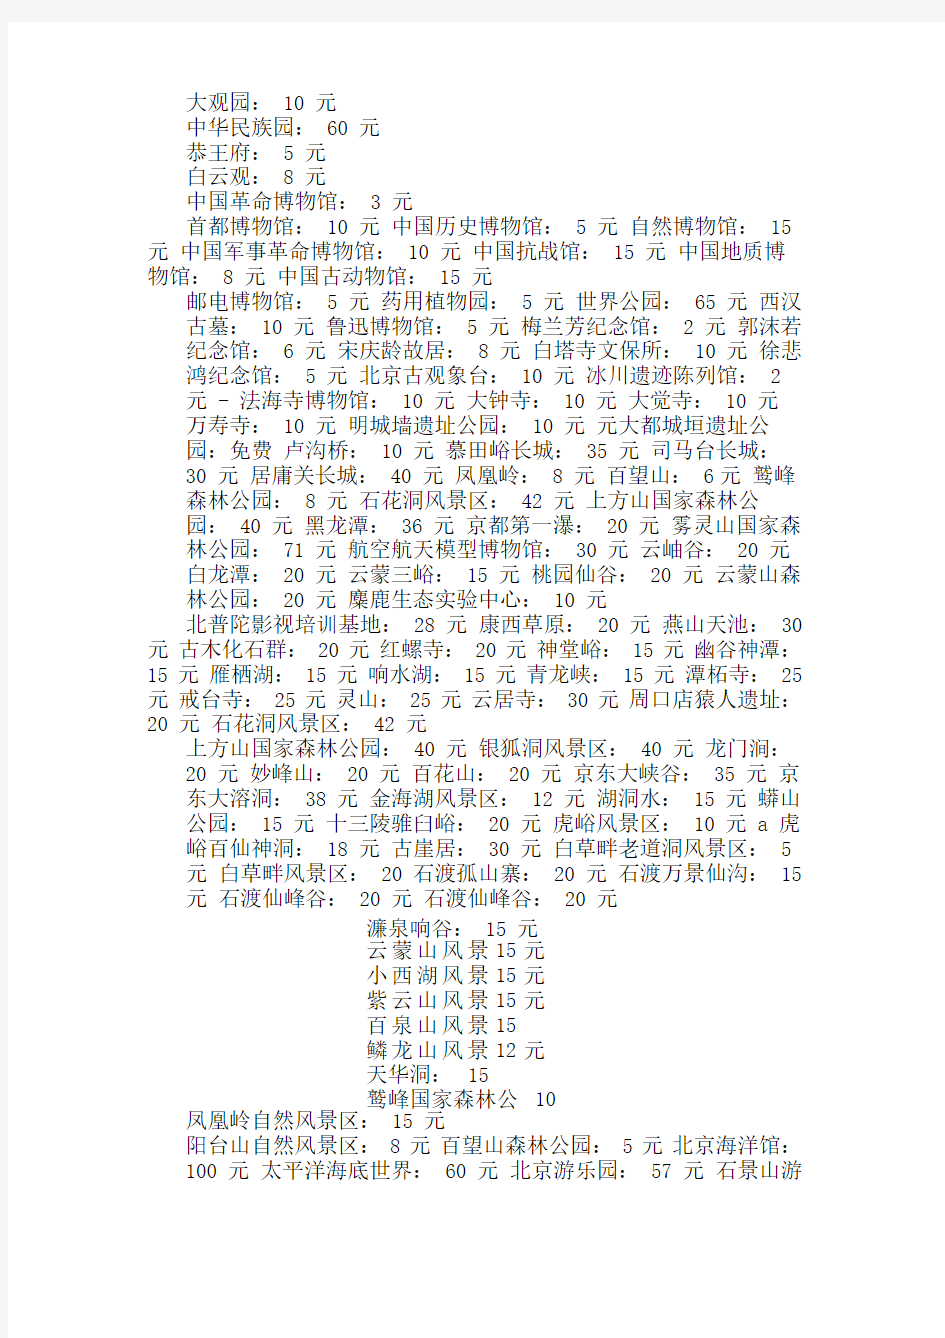 最全北京各大旅游景点门票价格明细表